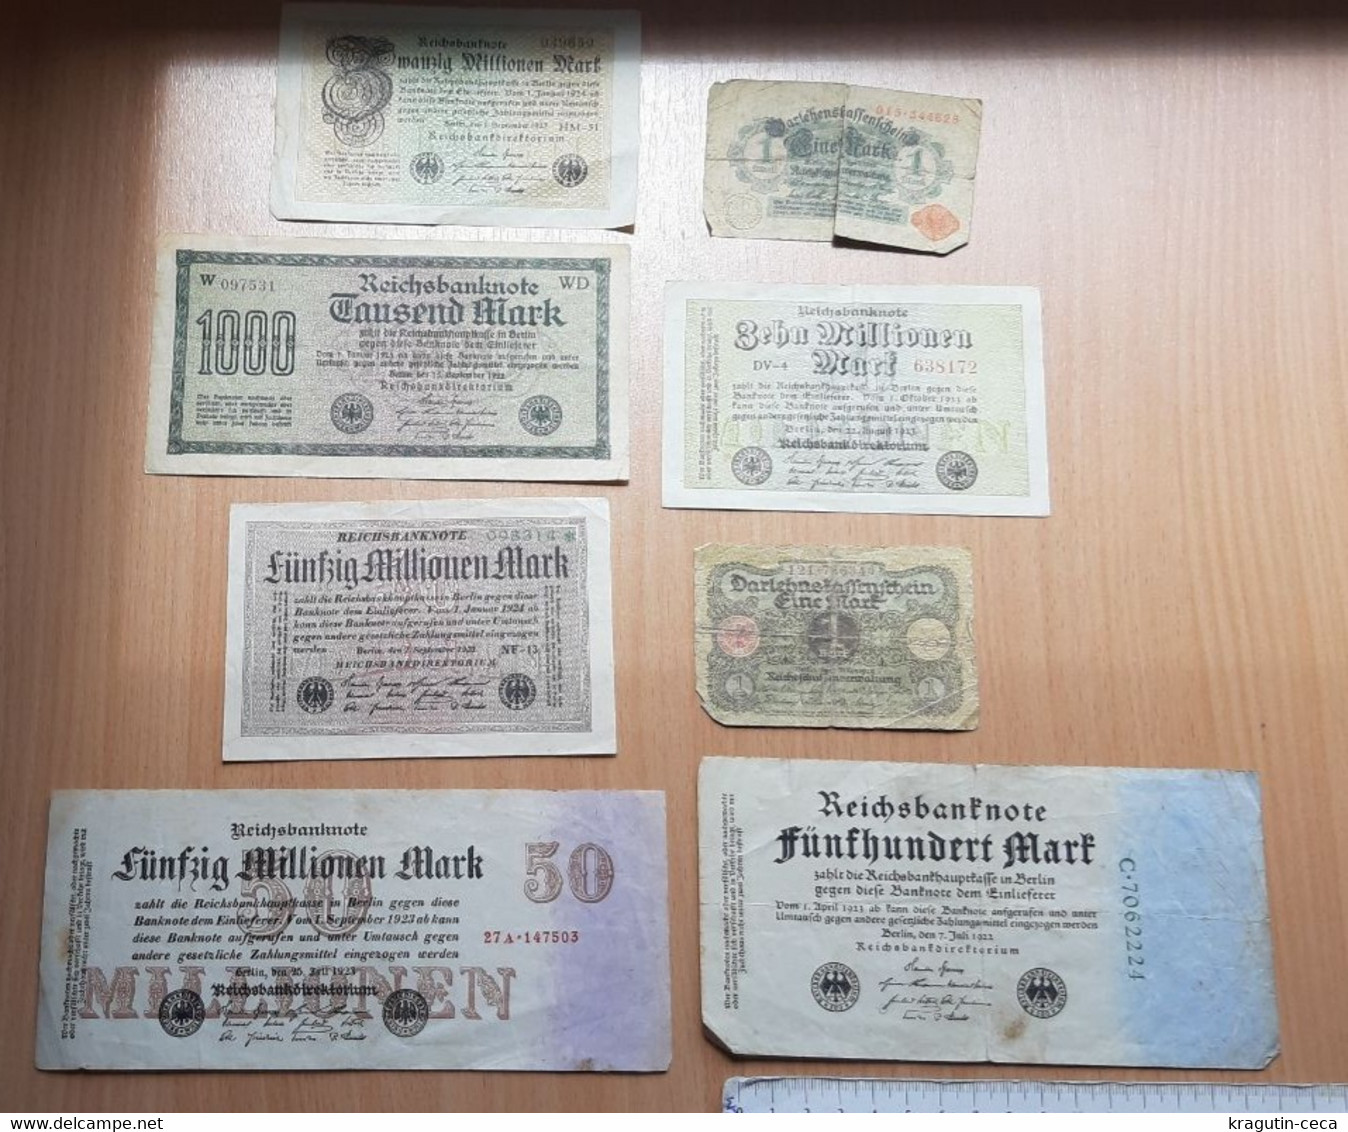 REICHSBANKNOTE 1923 LOT GERMAN GERMANY BANKNOTE BANK MILLION MARK BILL Paper Money BILLET DE BANQUE Darlehnskassenschein - Collections